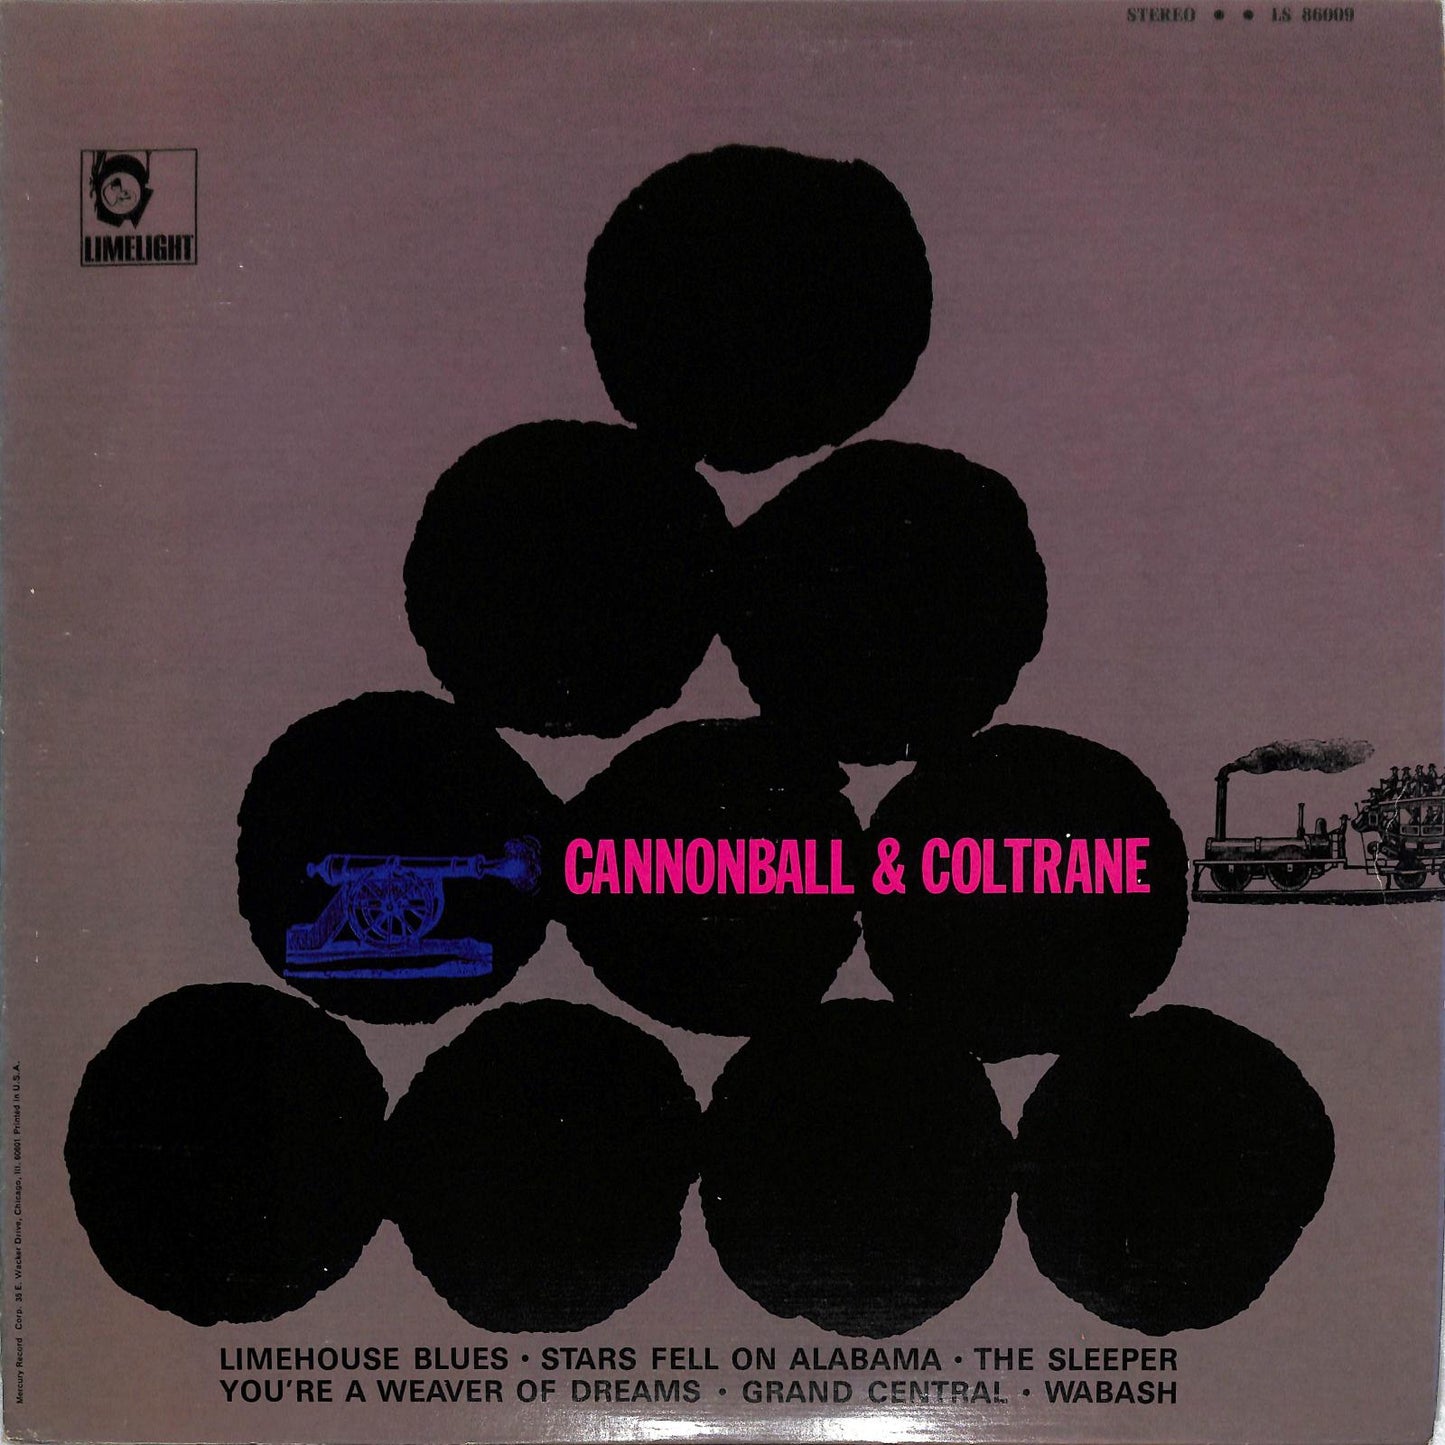 CANNONBALL & COLTRANE - Cannonball & Coltrane